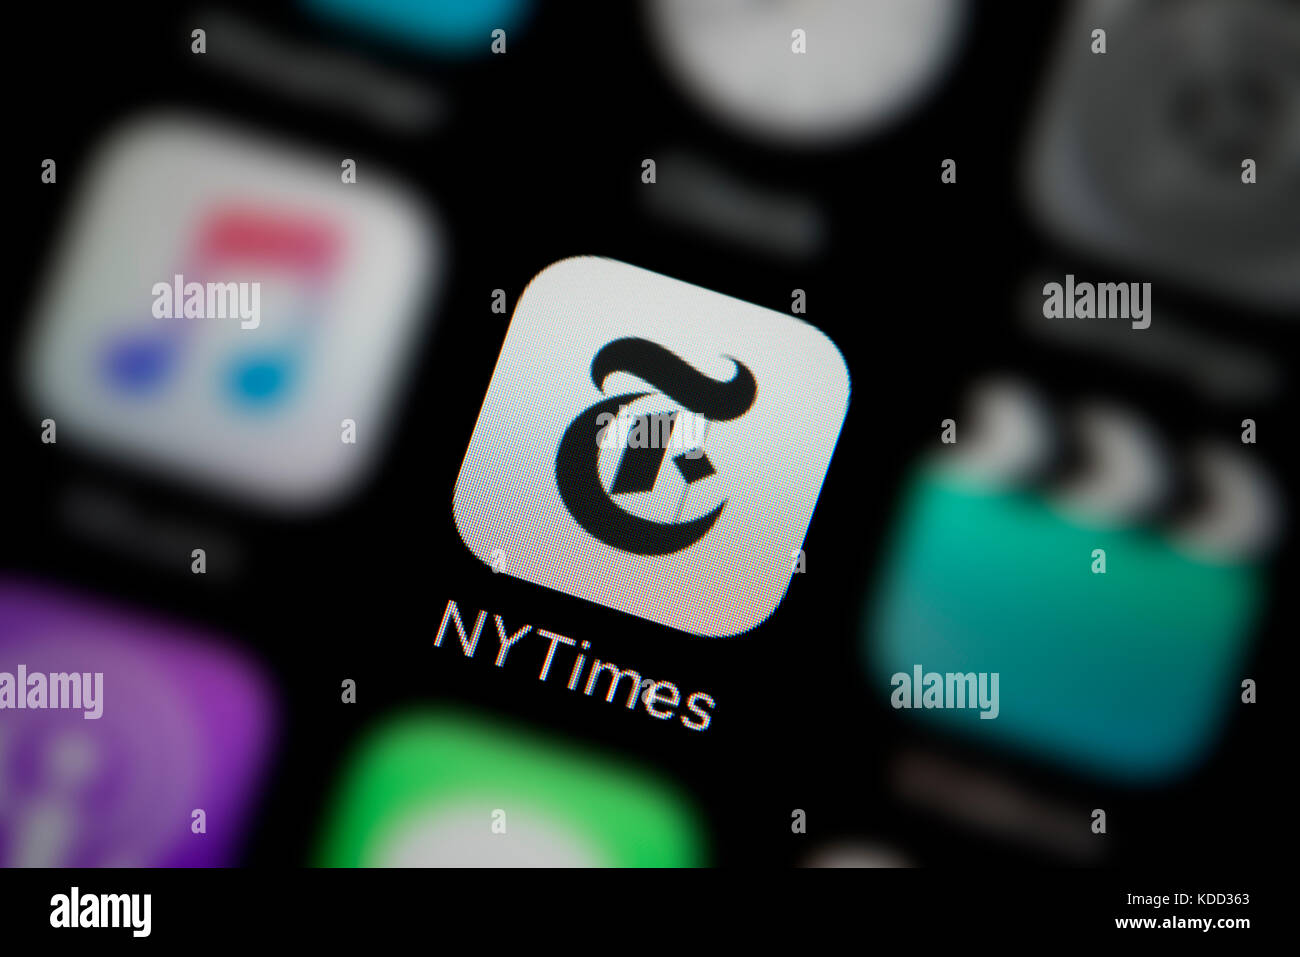 Una inquadratura ravvicinata del logo in rappresentanza del New York Times Icona app, come si vede sullo schermo di un telefono intelligente (solo uso editoriale) Foto Stock